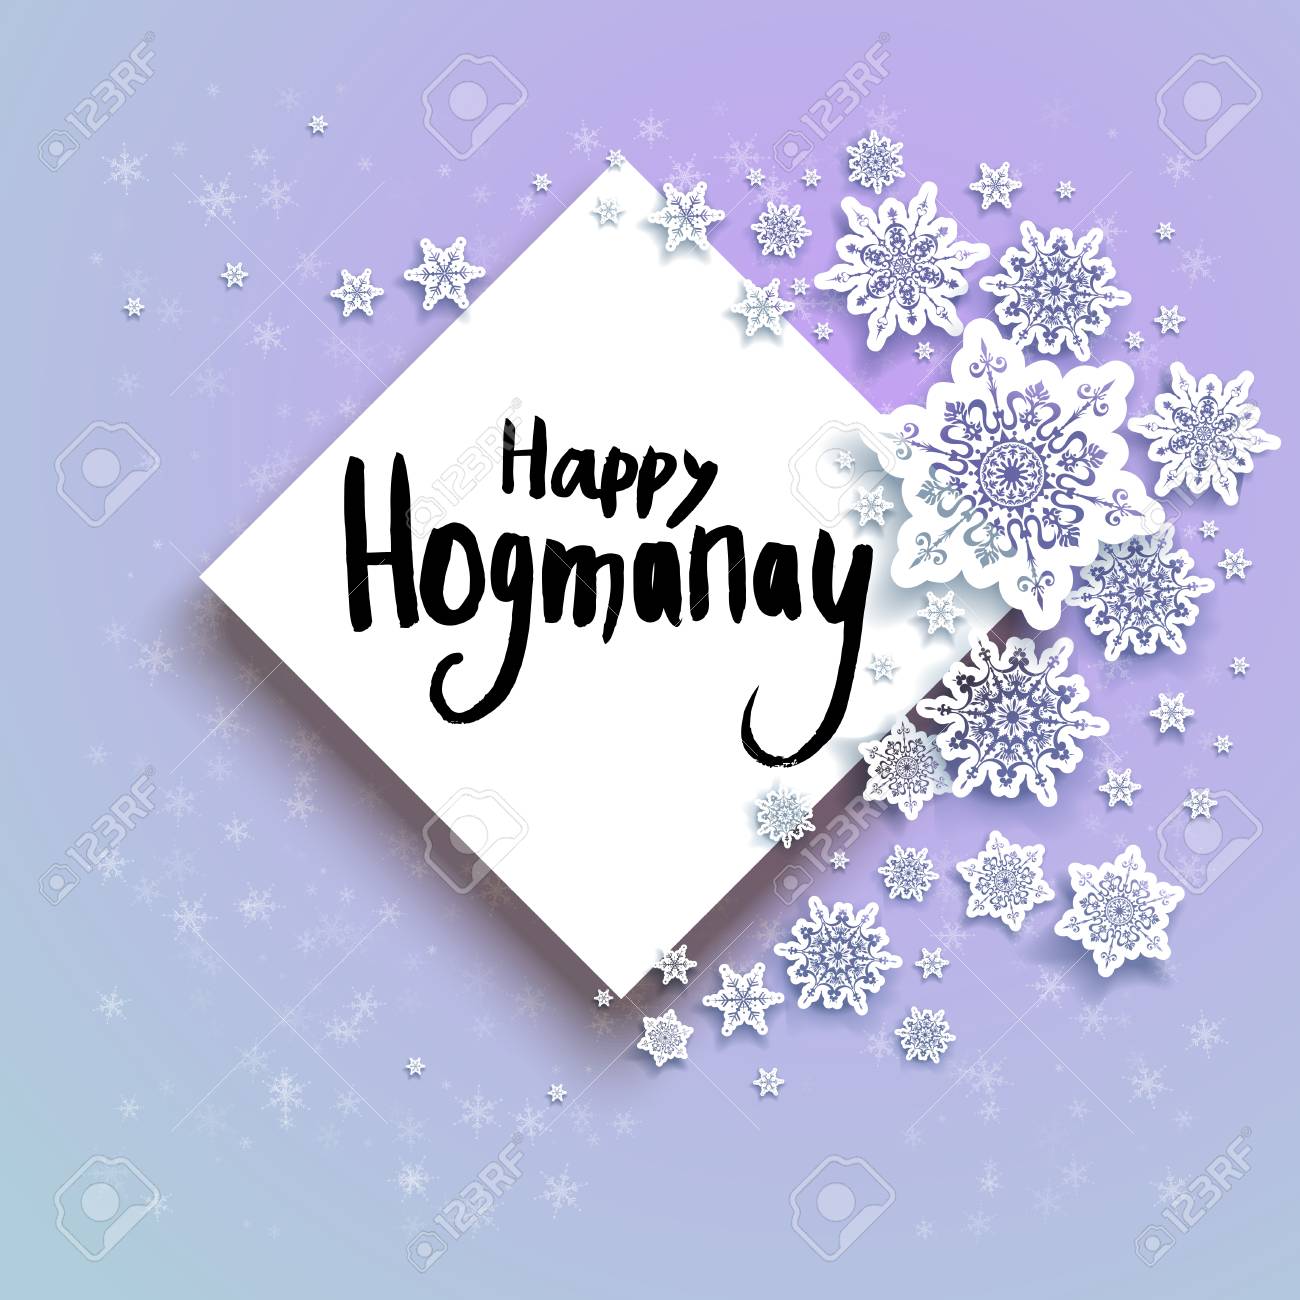 Happy hogmanay gif